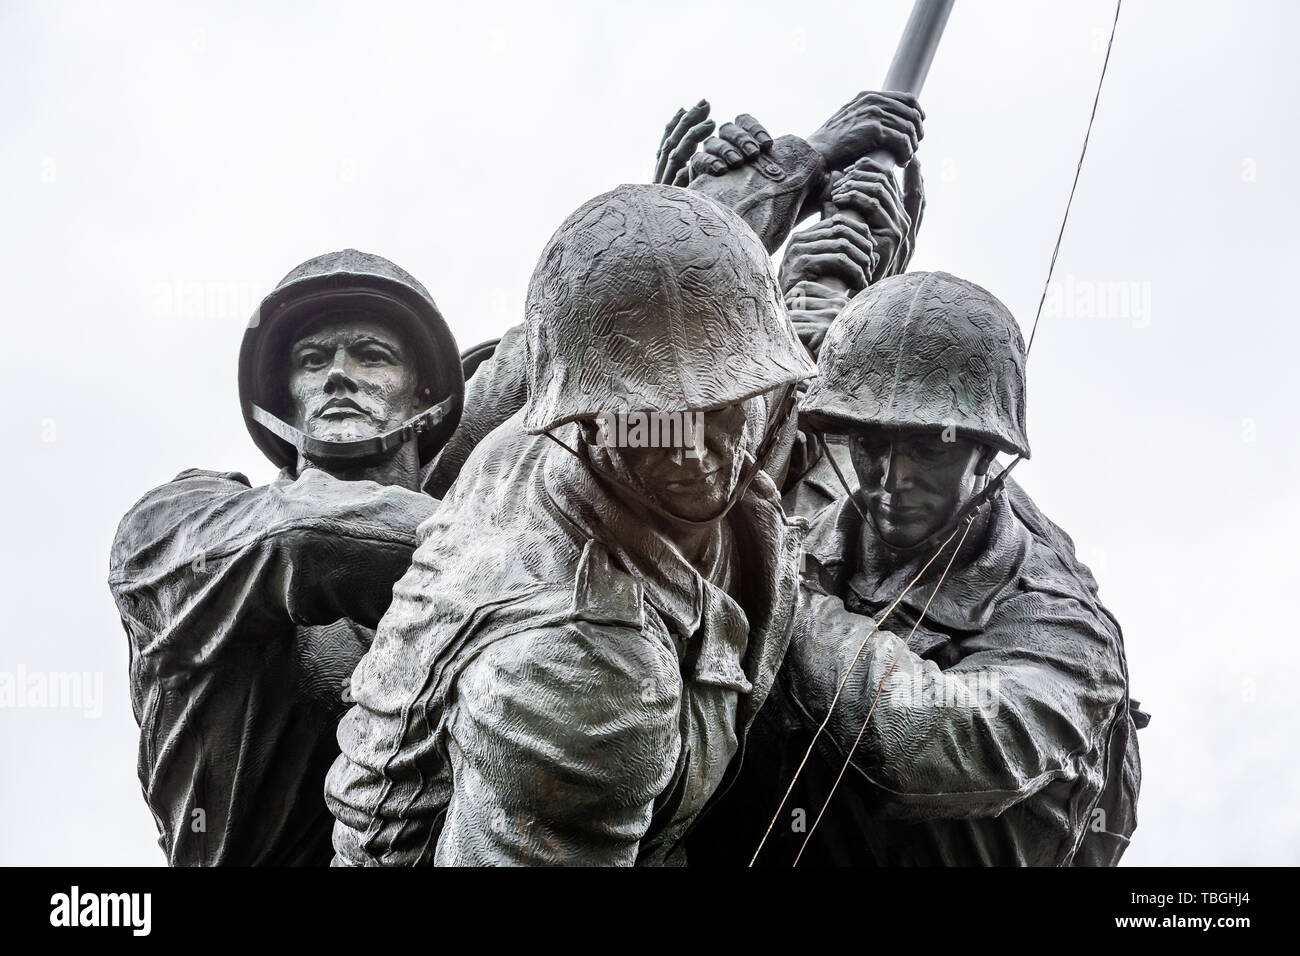 United States Marine Corps War Memorial dépeignant la plantation du drapeau sur Iwo Jima lors de la DEUXIÈME GUERRE MONDIALE dans la région de Arlington, Virginia, USA le 13 mai 2019 Banque D'Images